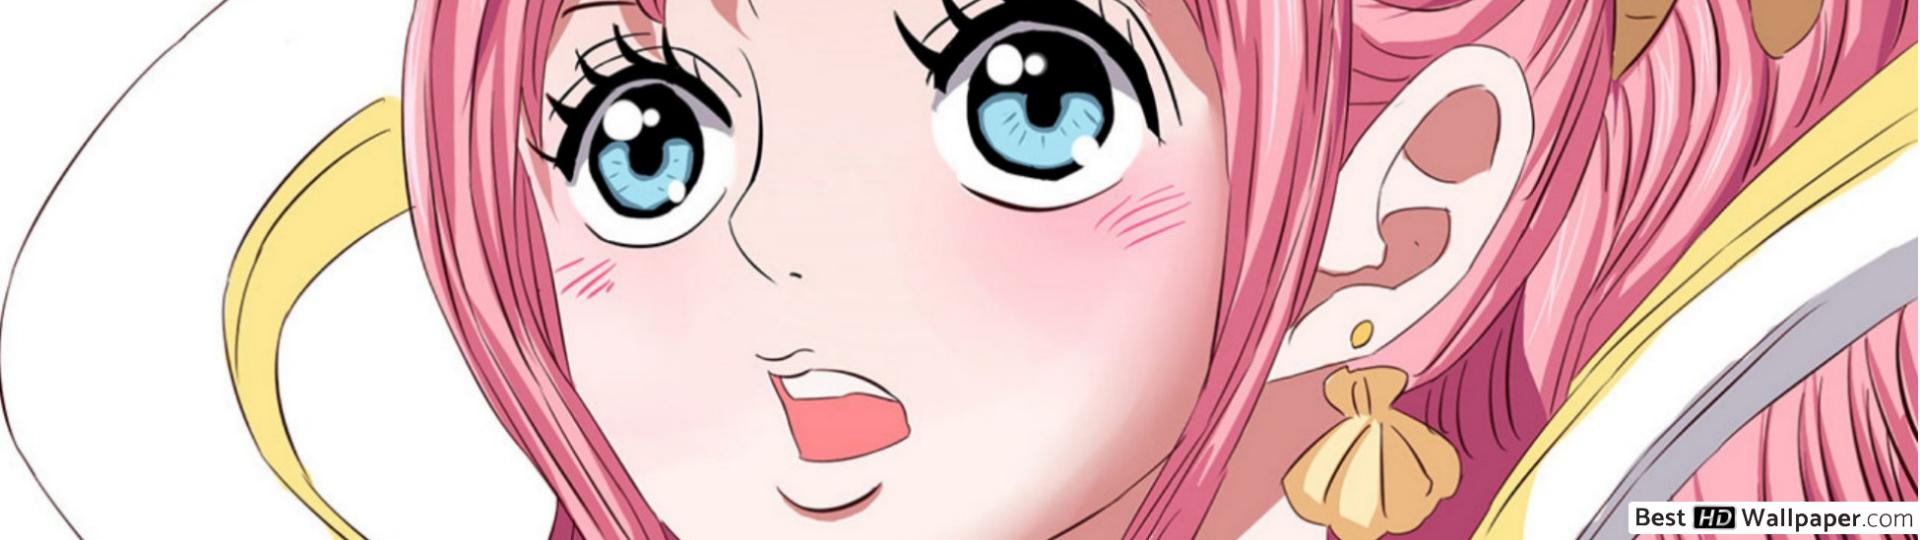 One Piece Shirahoshi HD wallpaper download